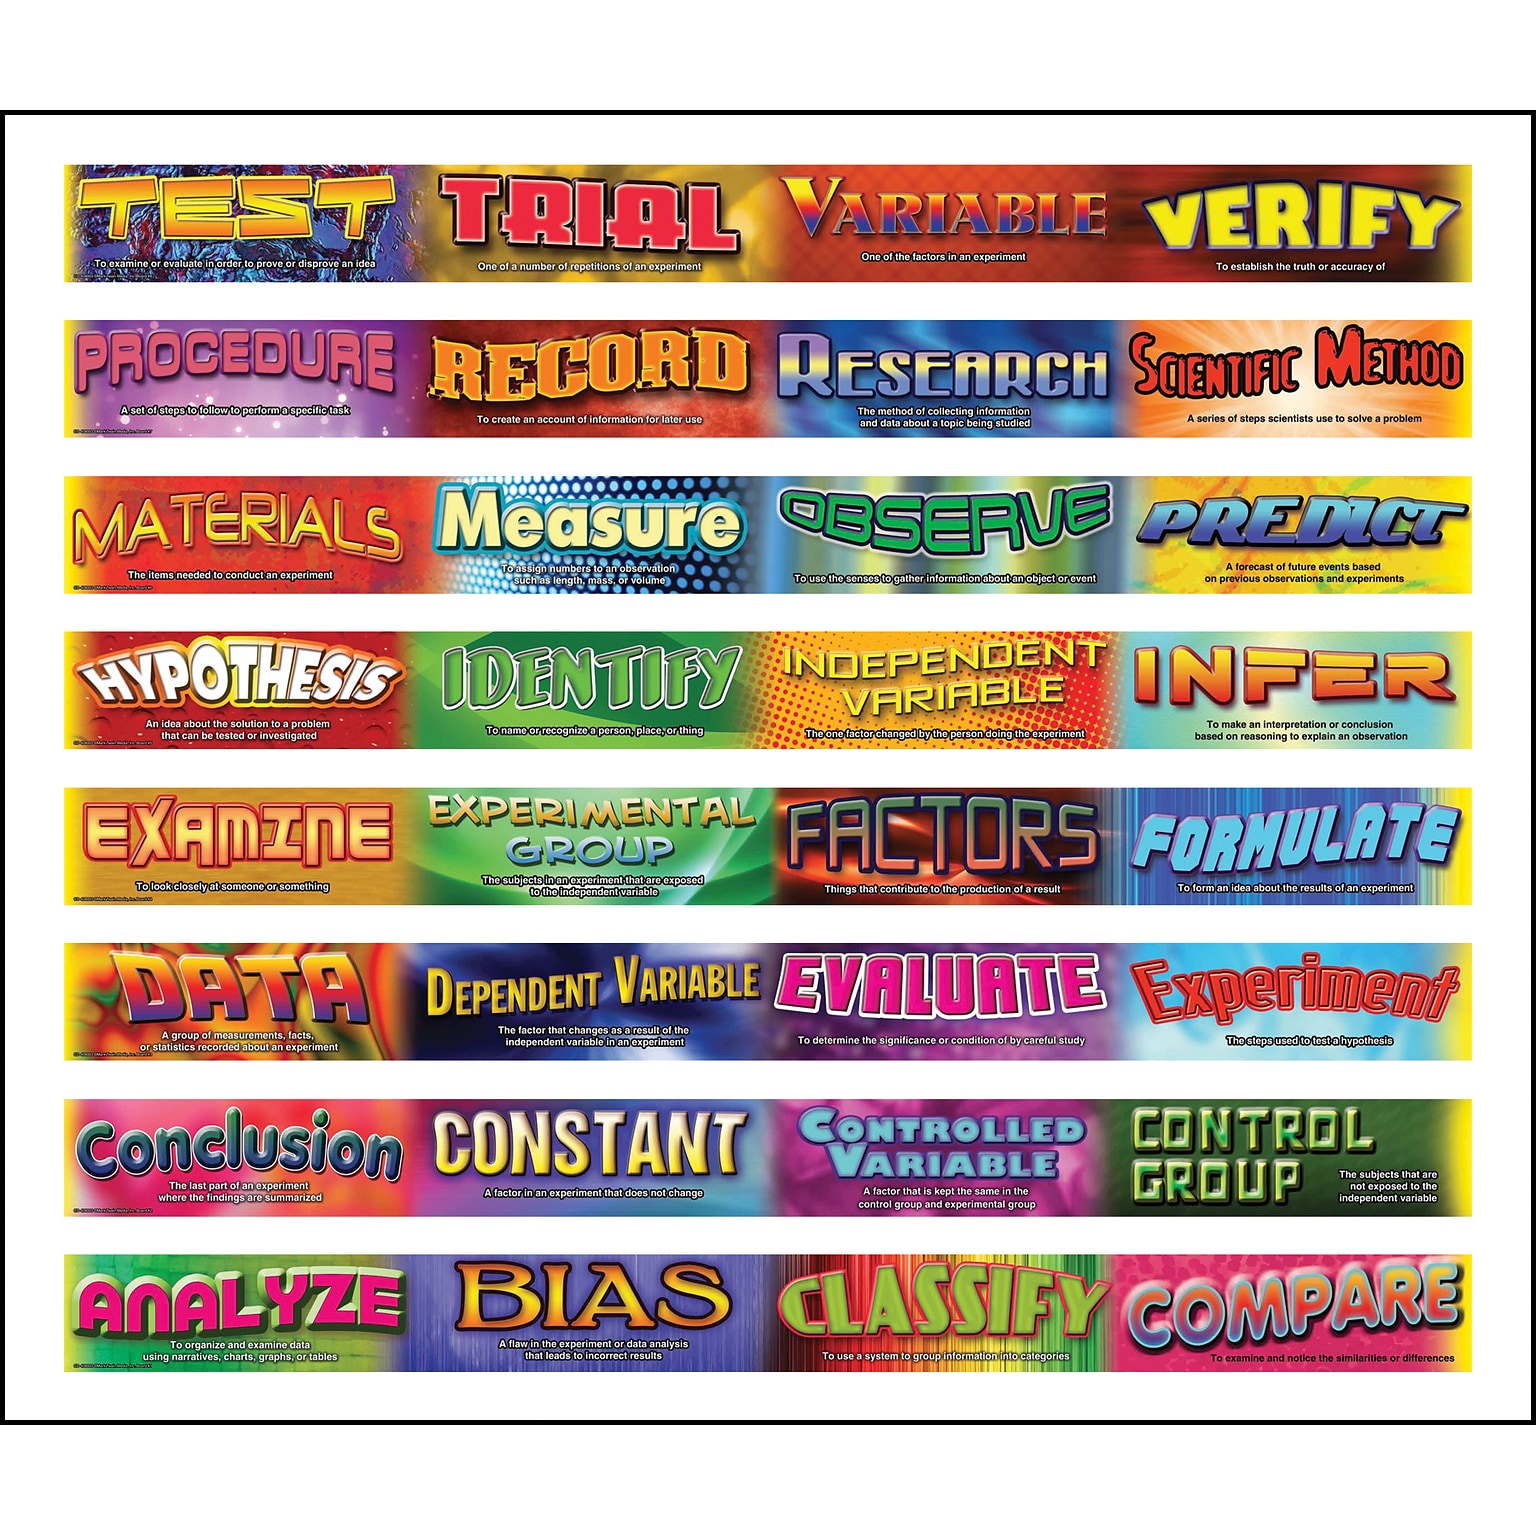 Carson-Dellosa Publishing Mark Twain Media 408003 3 x 3 Straight Scientific Inquiry Vocabulary Words Border, Multicolor